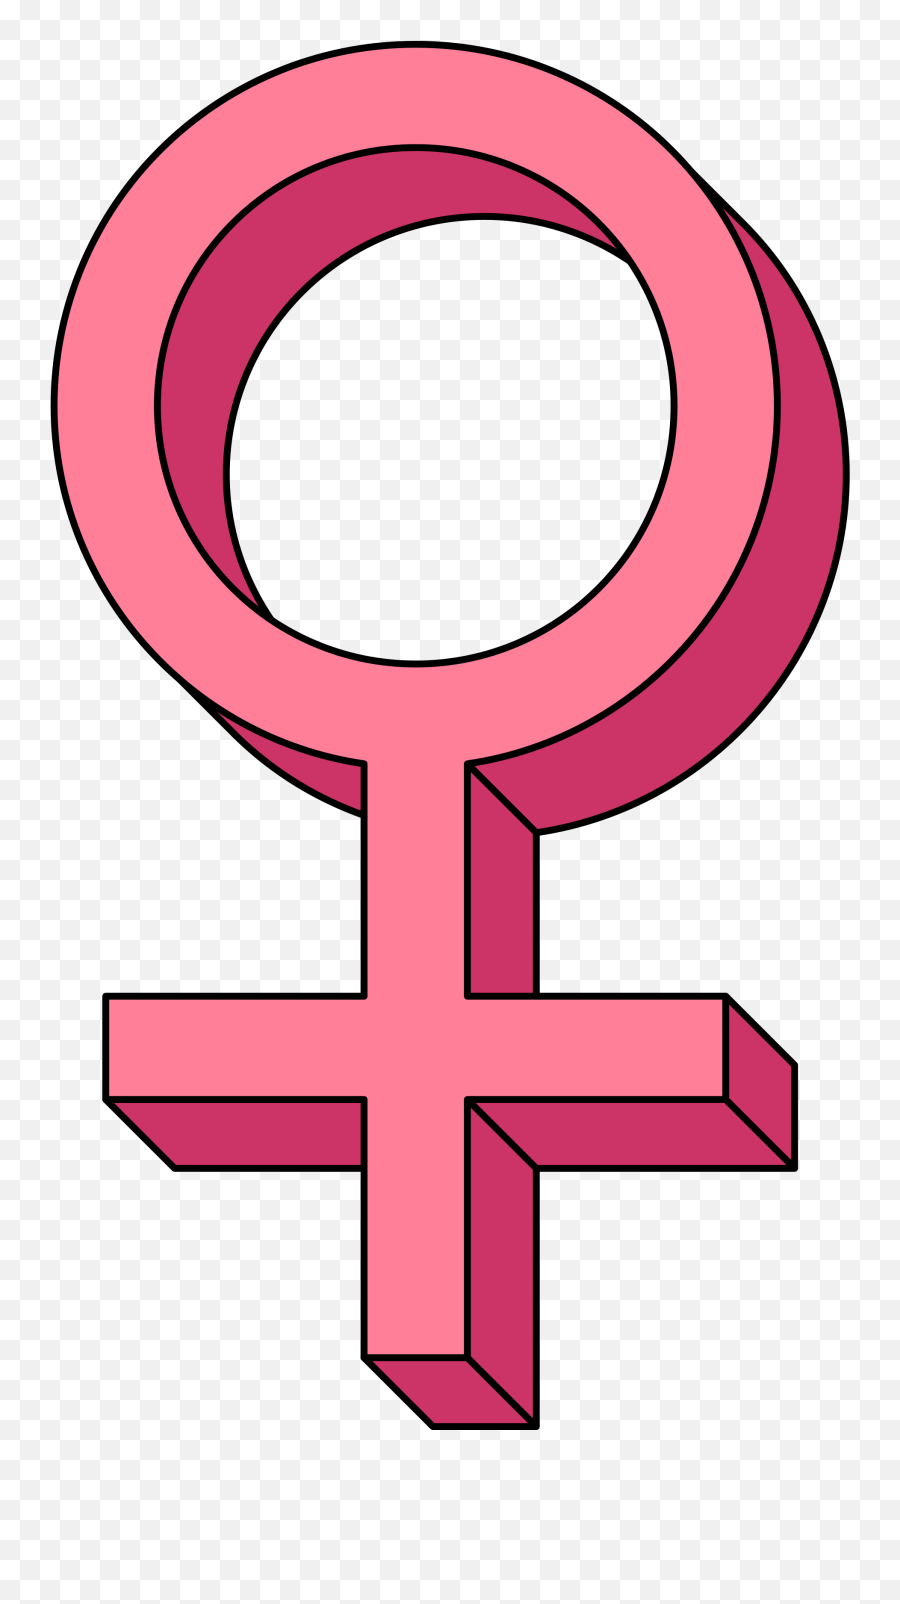 Venus - Female Sign Transparent Background Png,Female Symbol Png